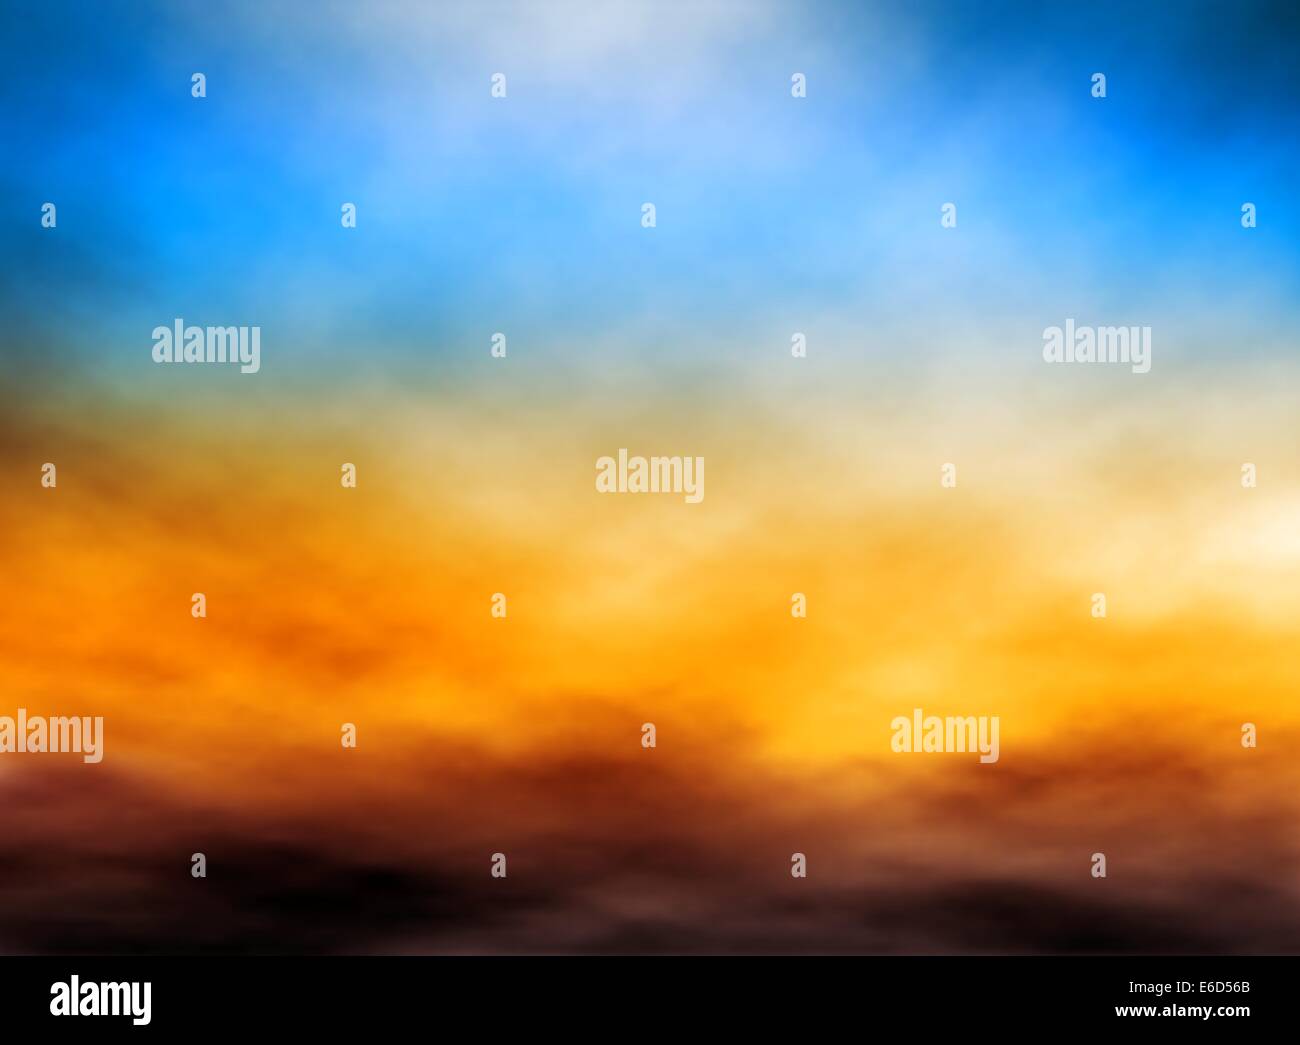 Editierbare Vektor-Illustration der Wolkenbank bei Sonnenuntergang Himmel mit einem Verlaufsgitter gemacht Stock Vektor